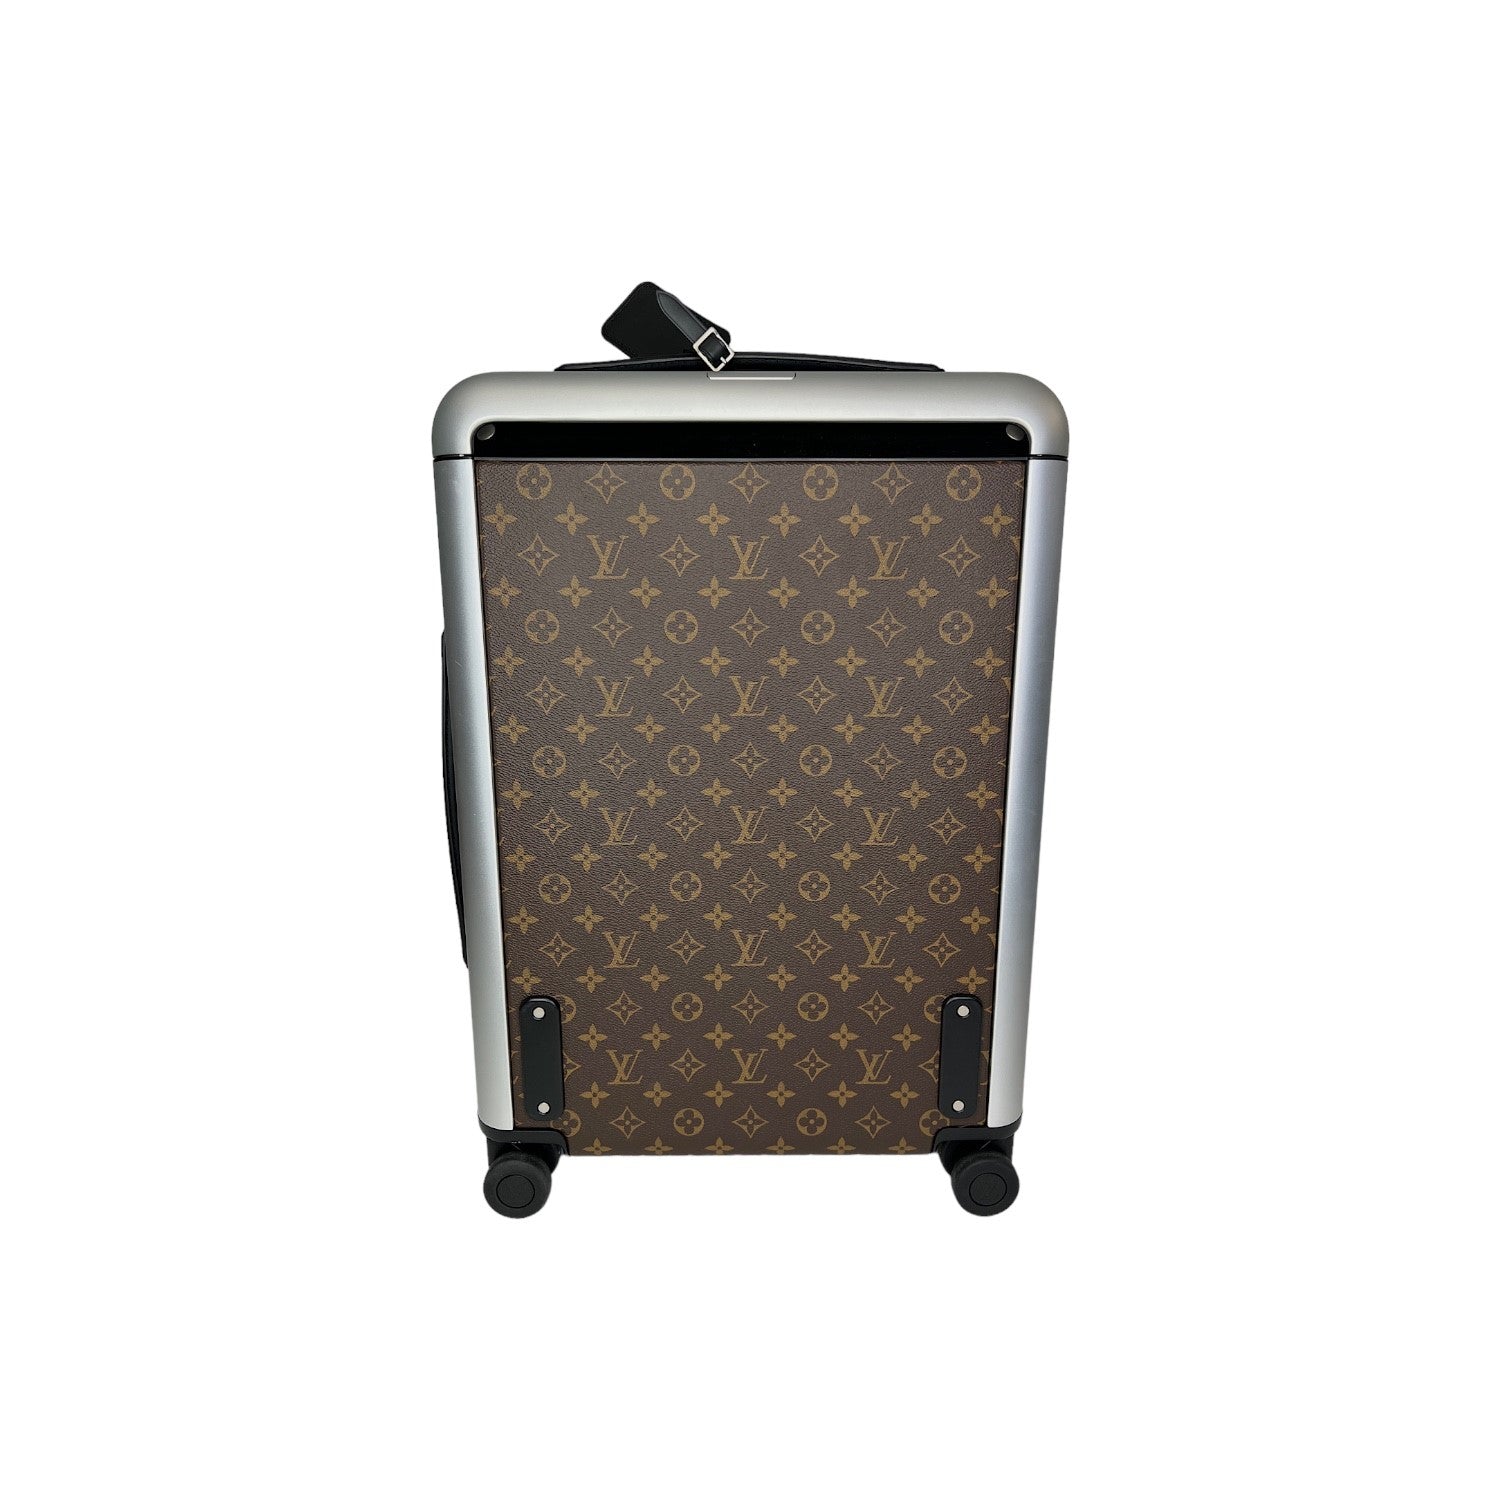 Lot - Louis Vuitton Monogram Horizon 50 rolling luggage suitcase